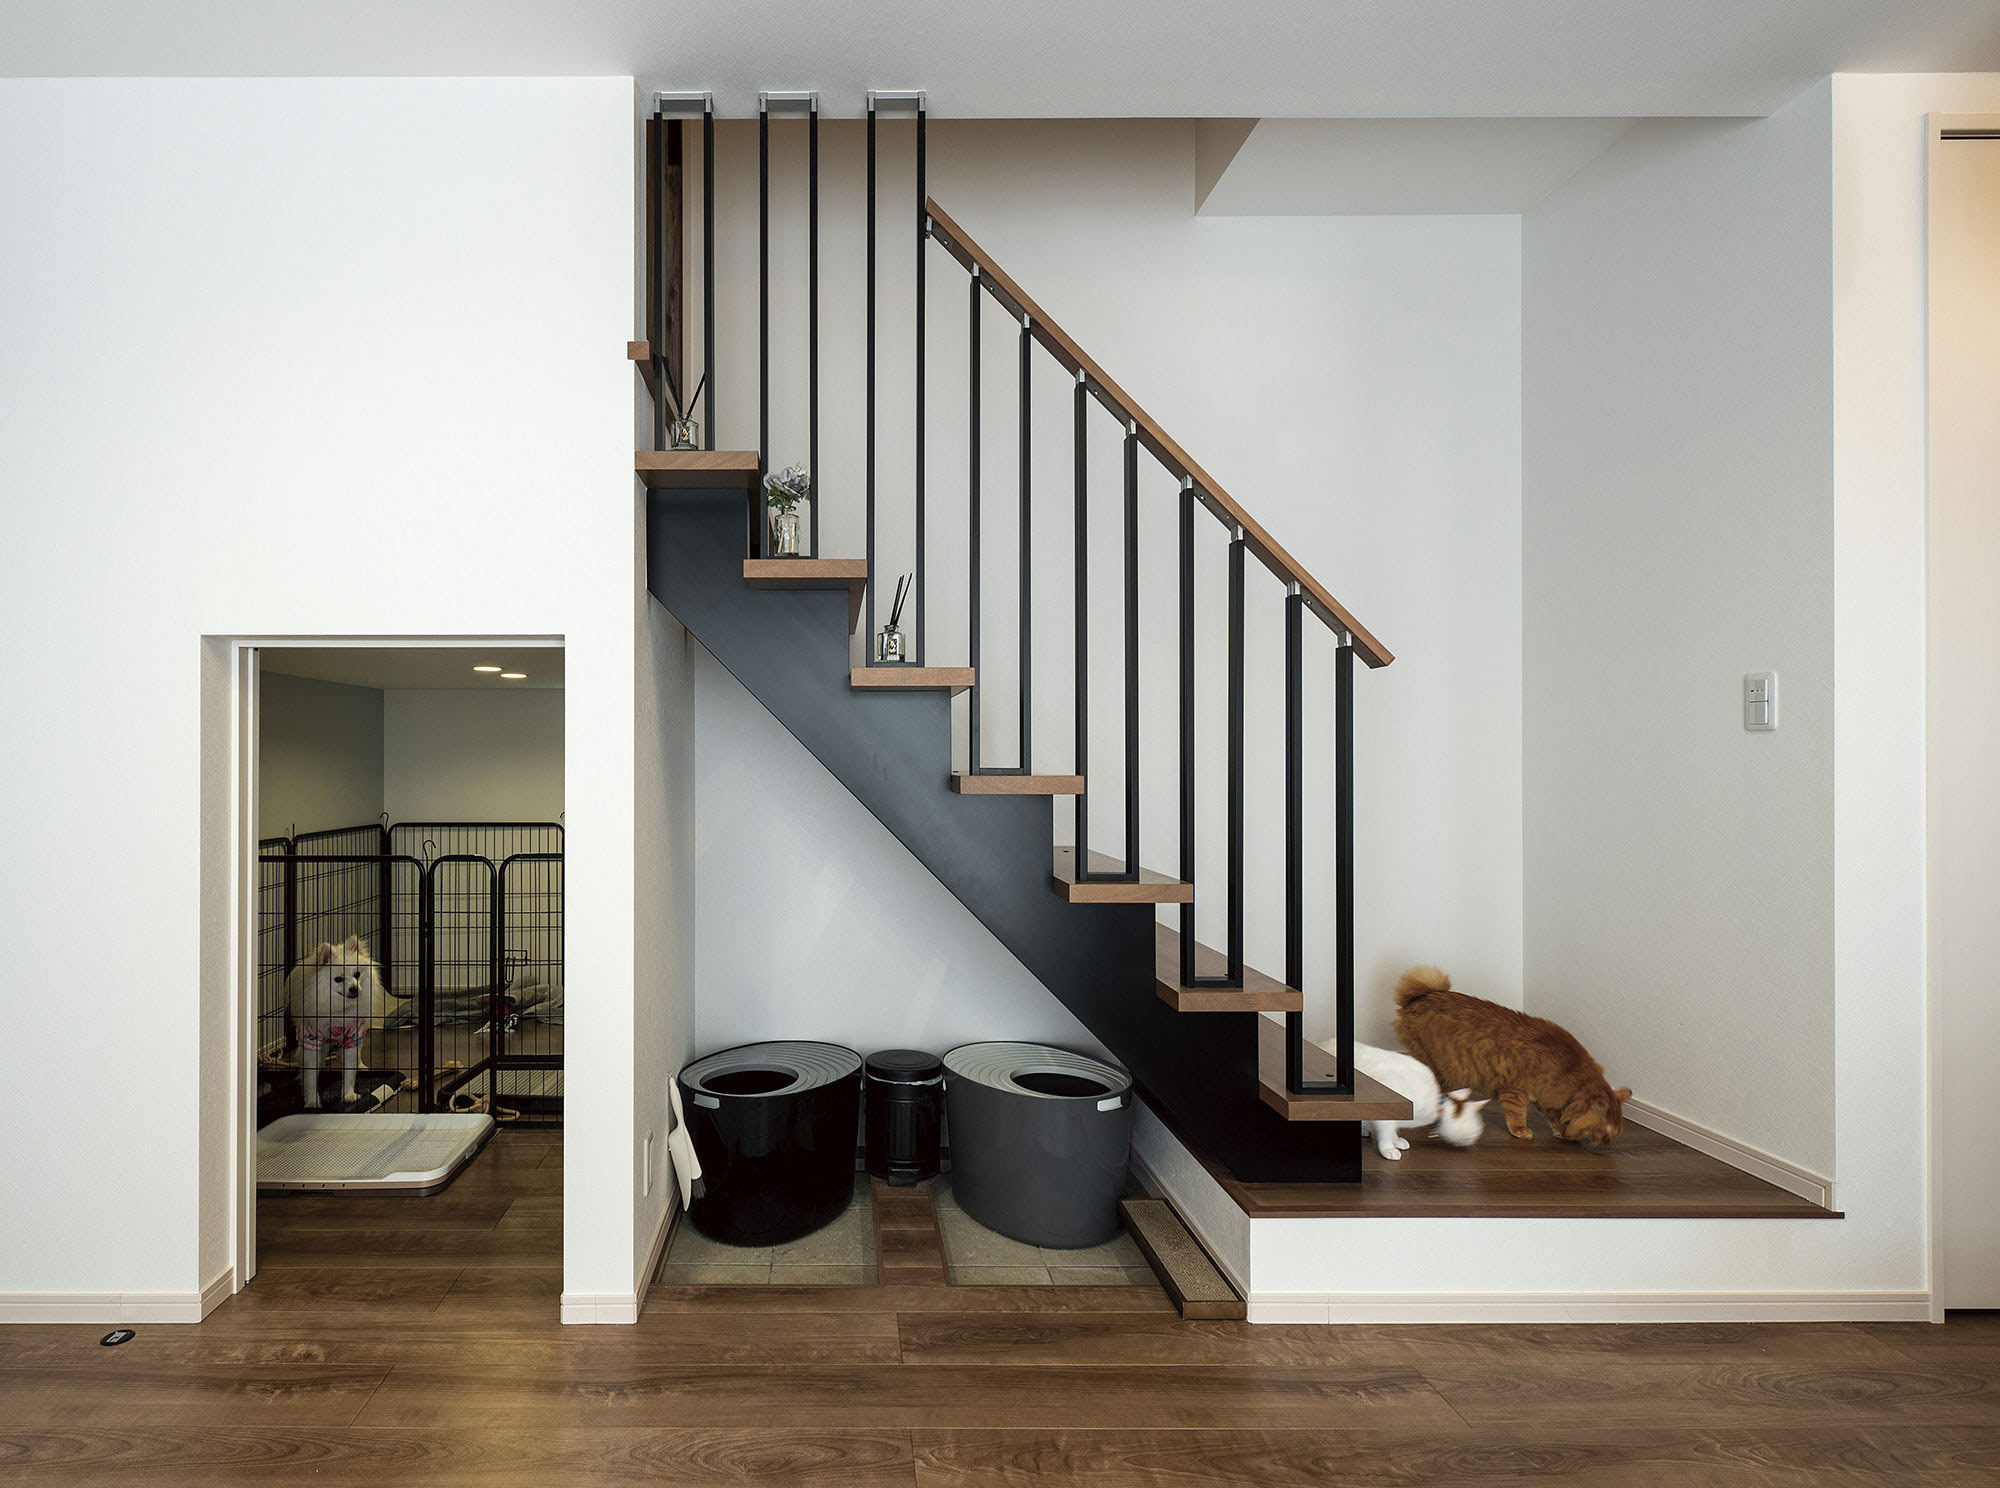 ハーフ収納は愛犬の部屋に。デッドスペースになりがちな階段下も、猫用のトイレスペースとして活用しています。